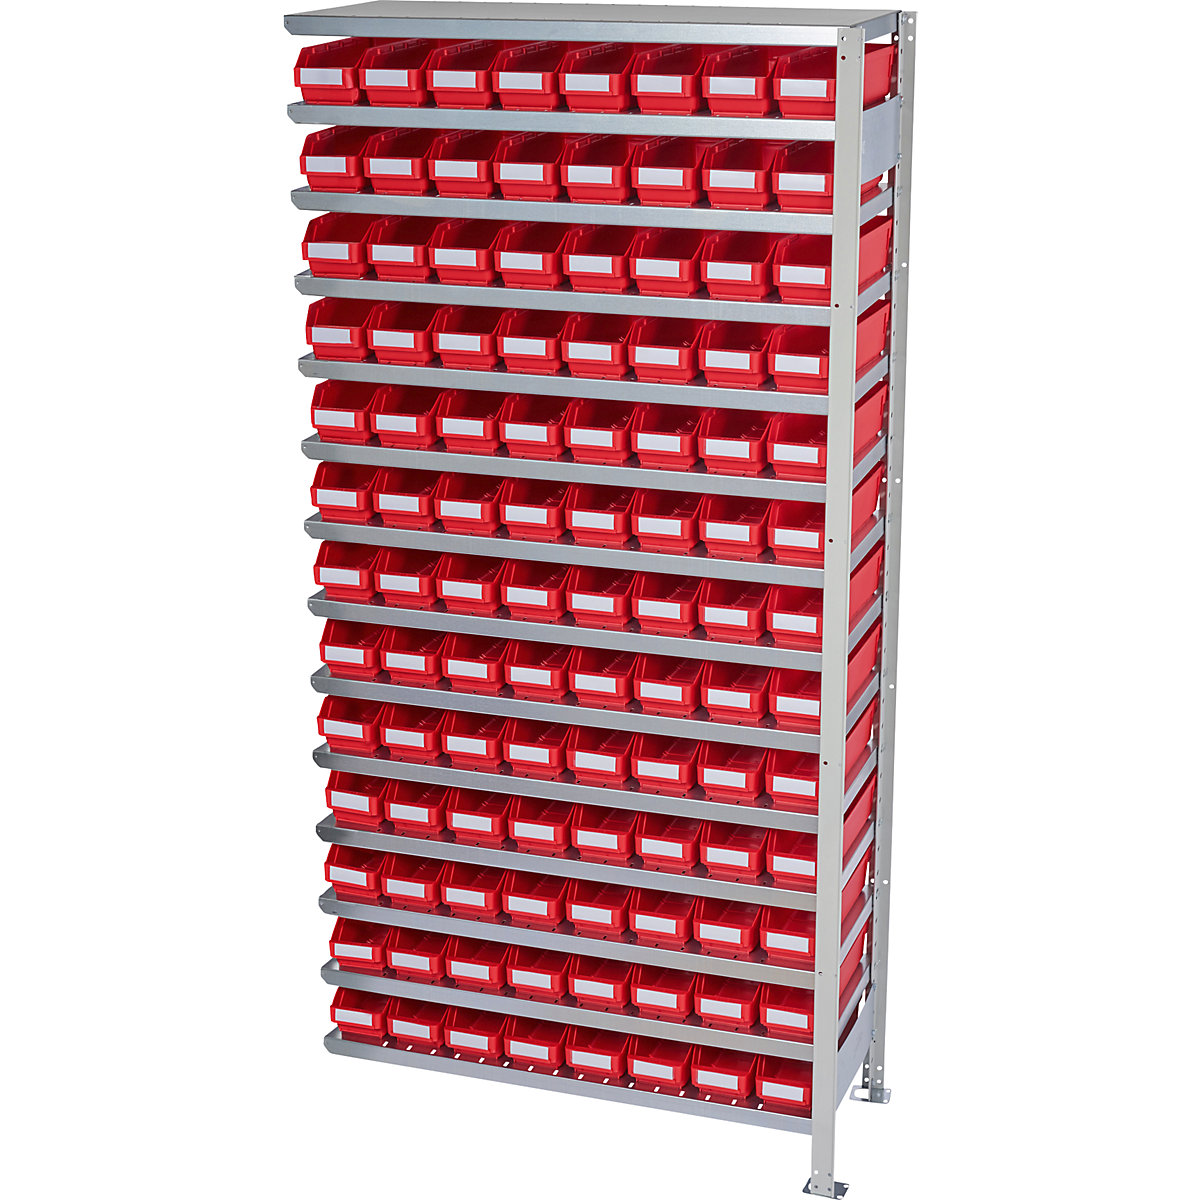 Összedugaszolós állvány dobozokkal – STEMO, állványmagasság 2100 mm, bővítő állvány, 300 mm mély, 104 piros doboz-39